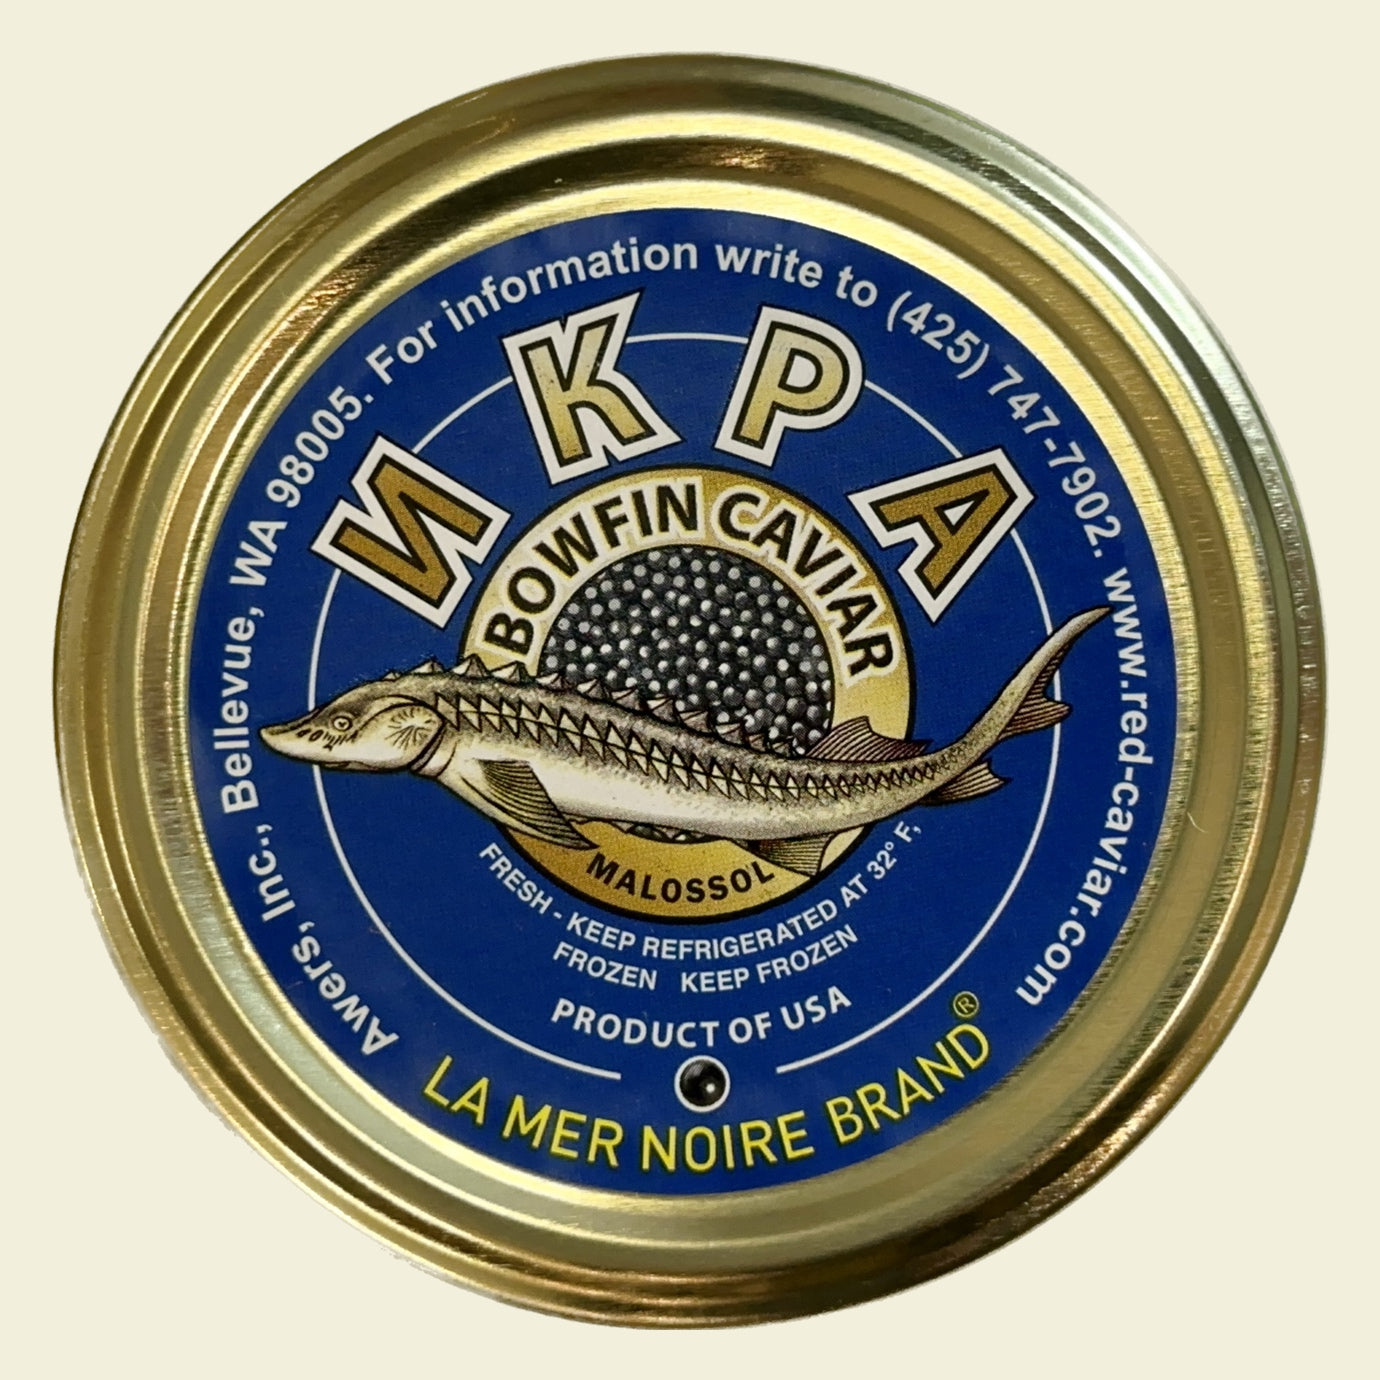 Bowfin Caviar